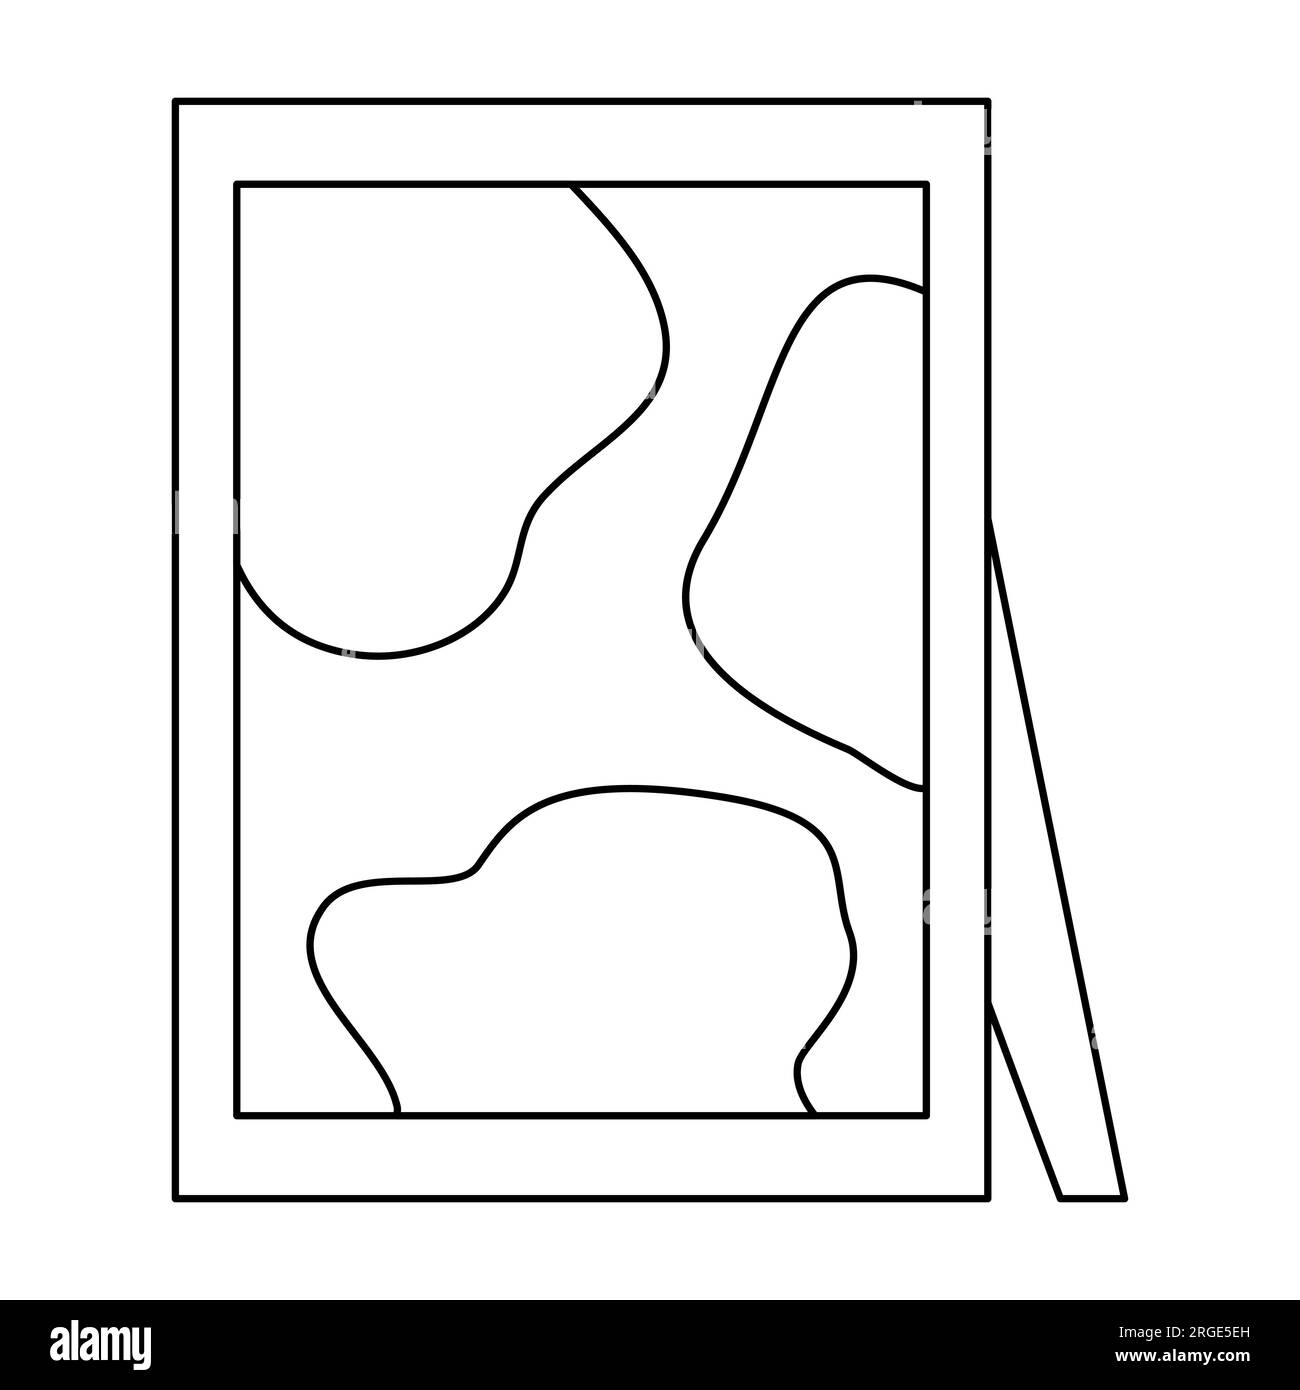 Photo de bureau ou cadre photo avec peinture abstraite à partir de formes géométriques, illustration vectorielle plate de style doodle pour livre de coloriage pour enfants Illustration de Vecteur